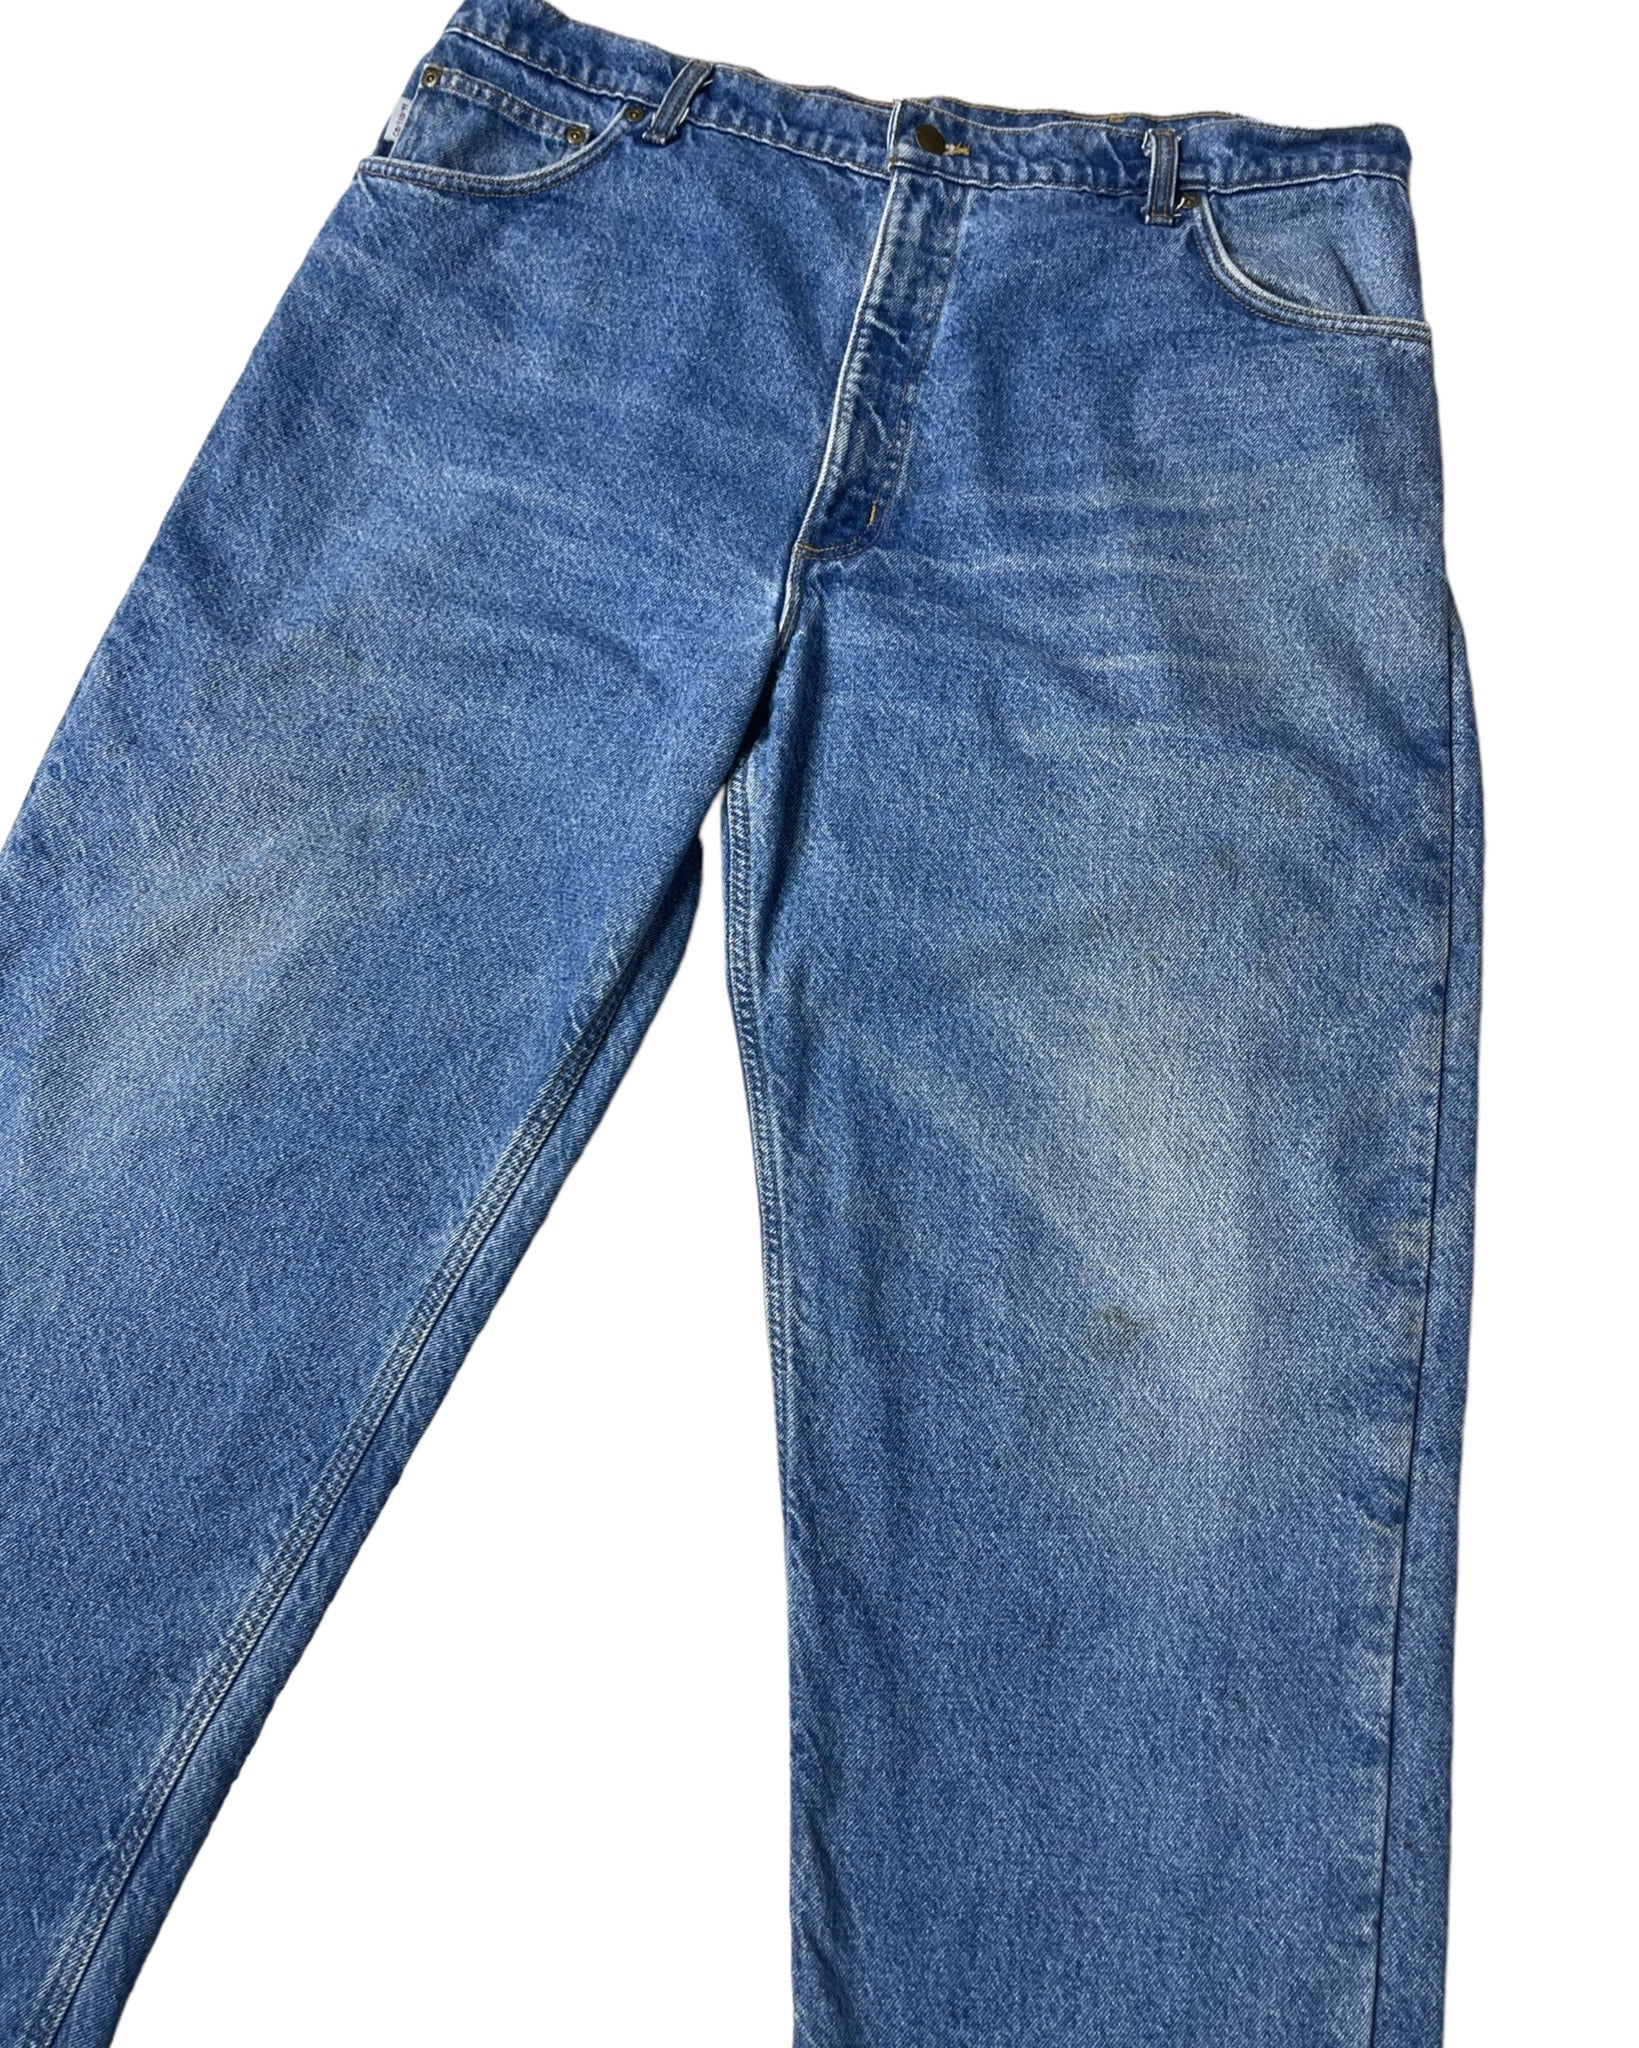  Jeans Carhartt Jean - B21DST - W42 L32 - PLOMOSTORE